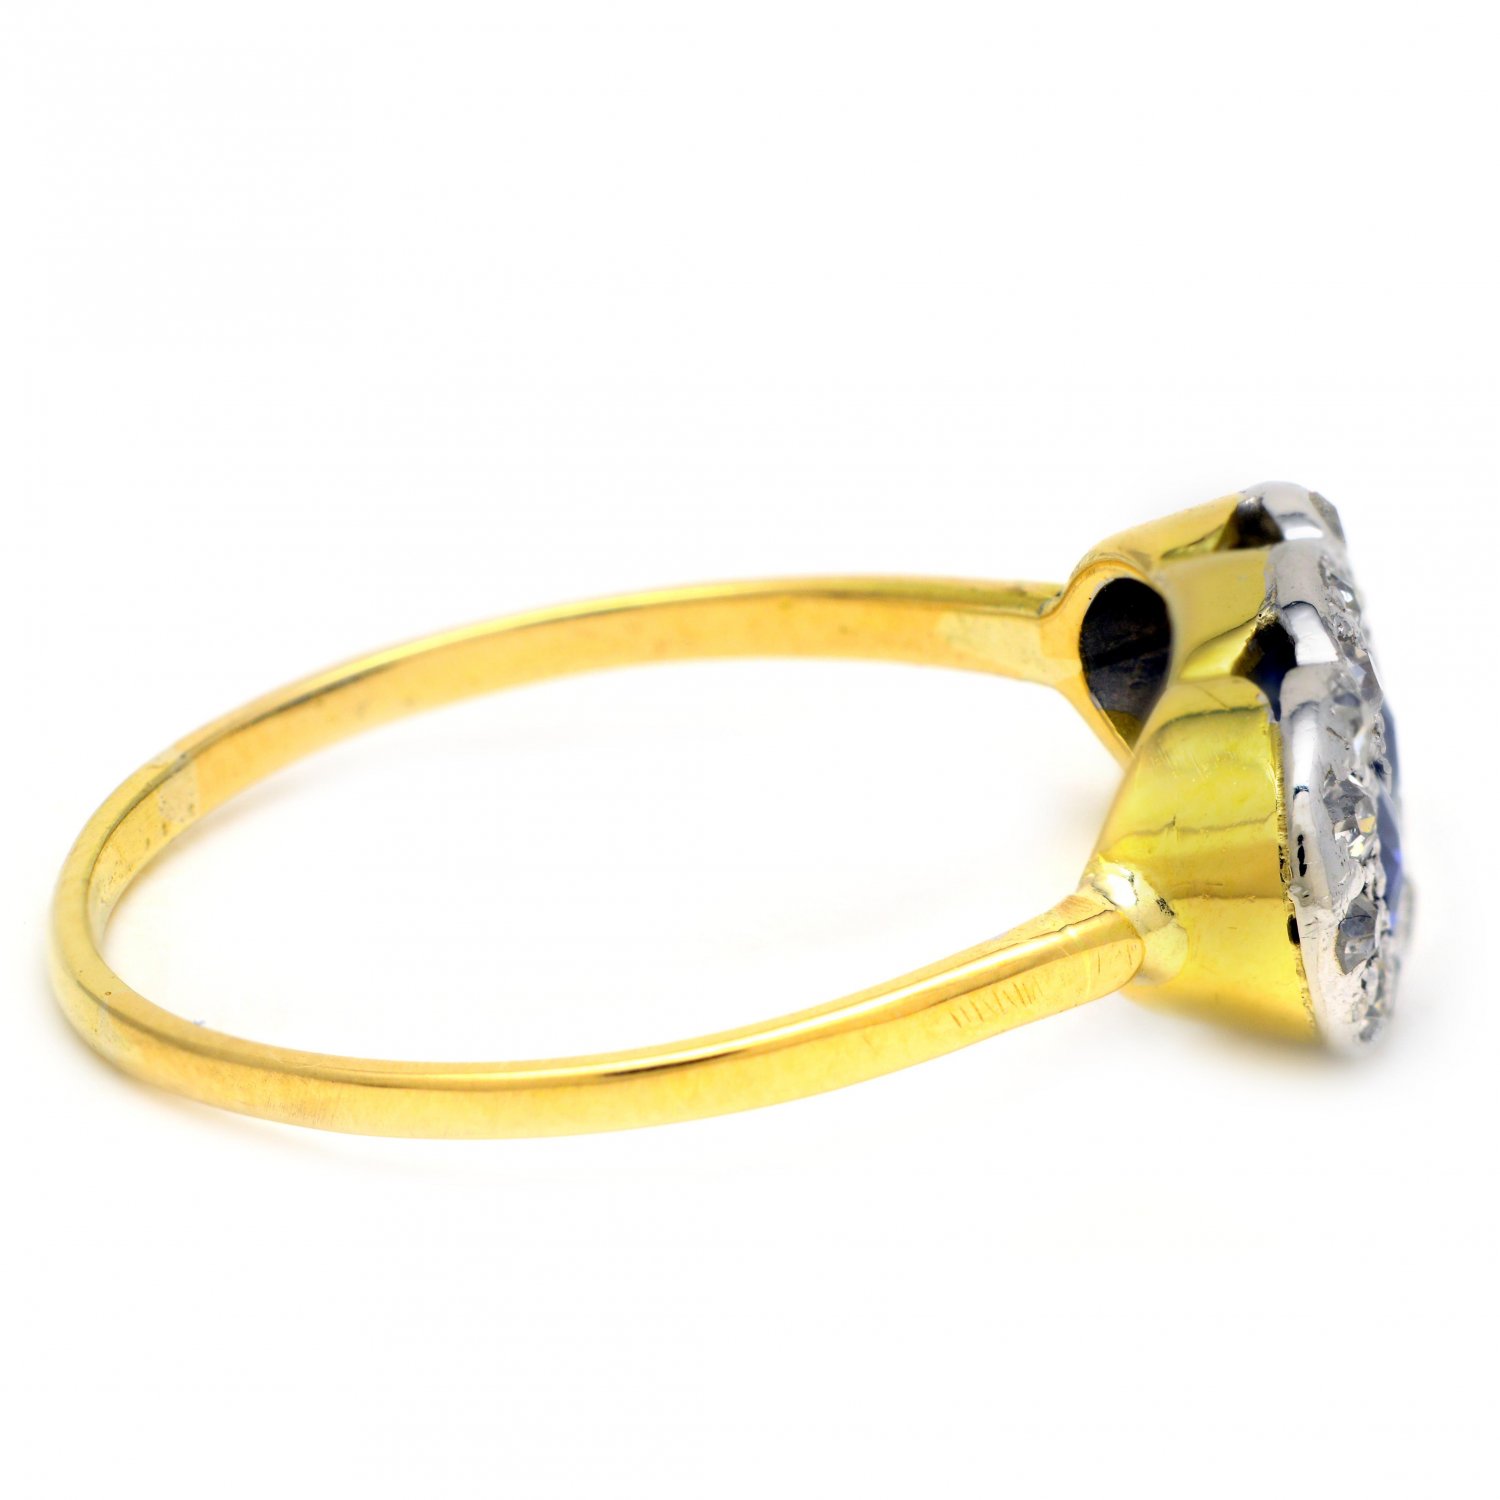 18ct Gold 3 Blue Ceylon Sapphires 16 Diamond Ring